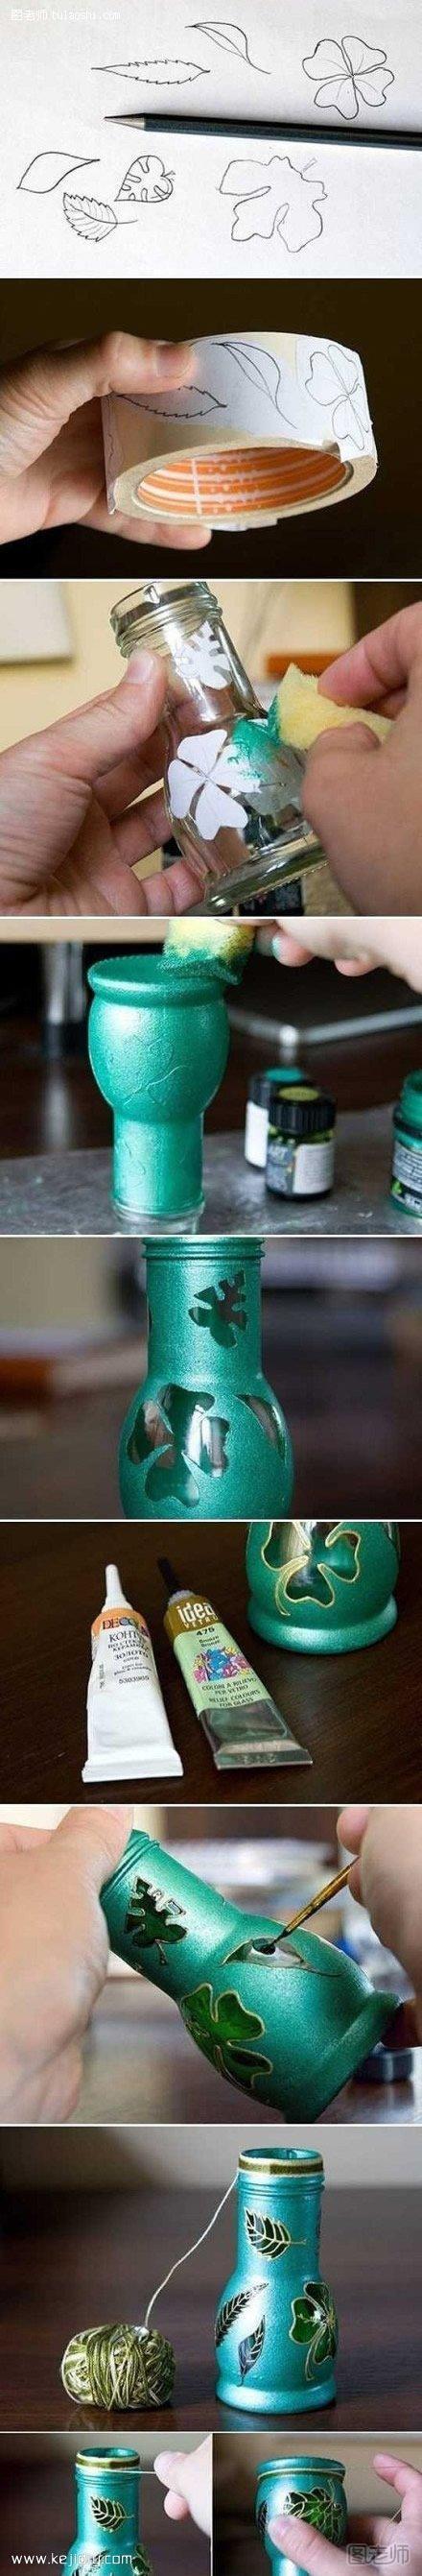 玻璃瓶废物利用制作漂亮的花瓶- www.kejidiy.com